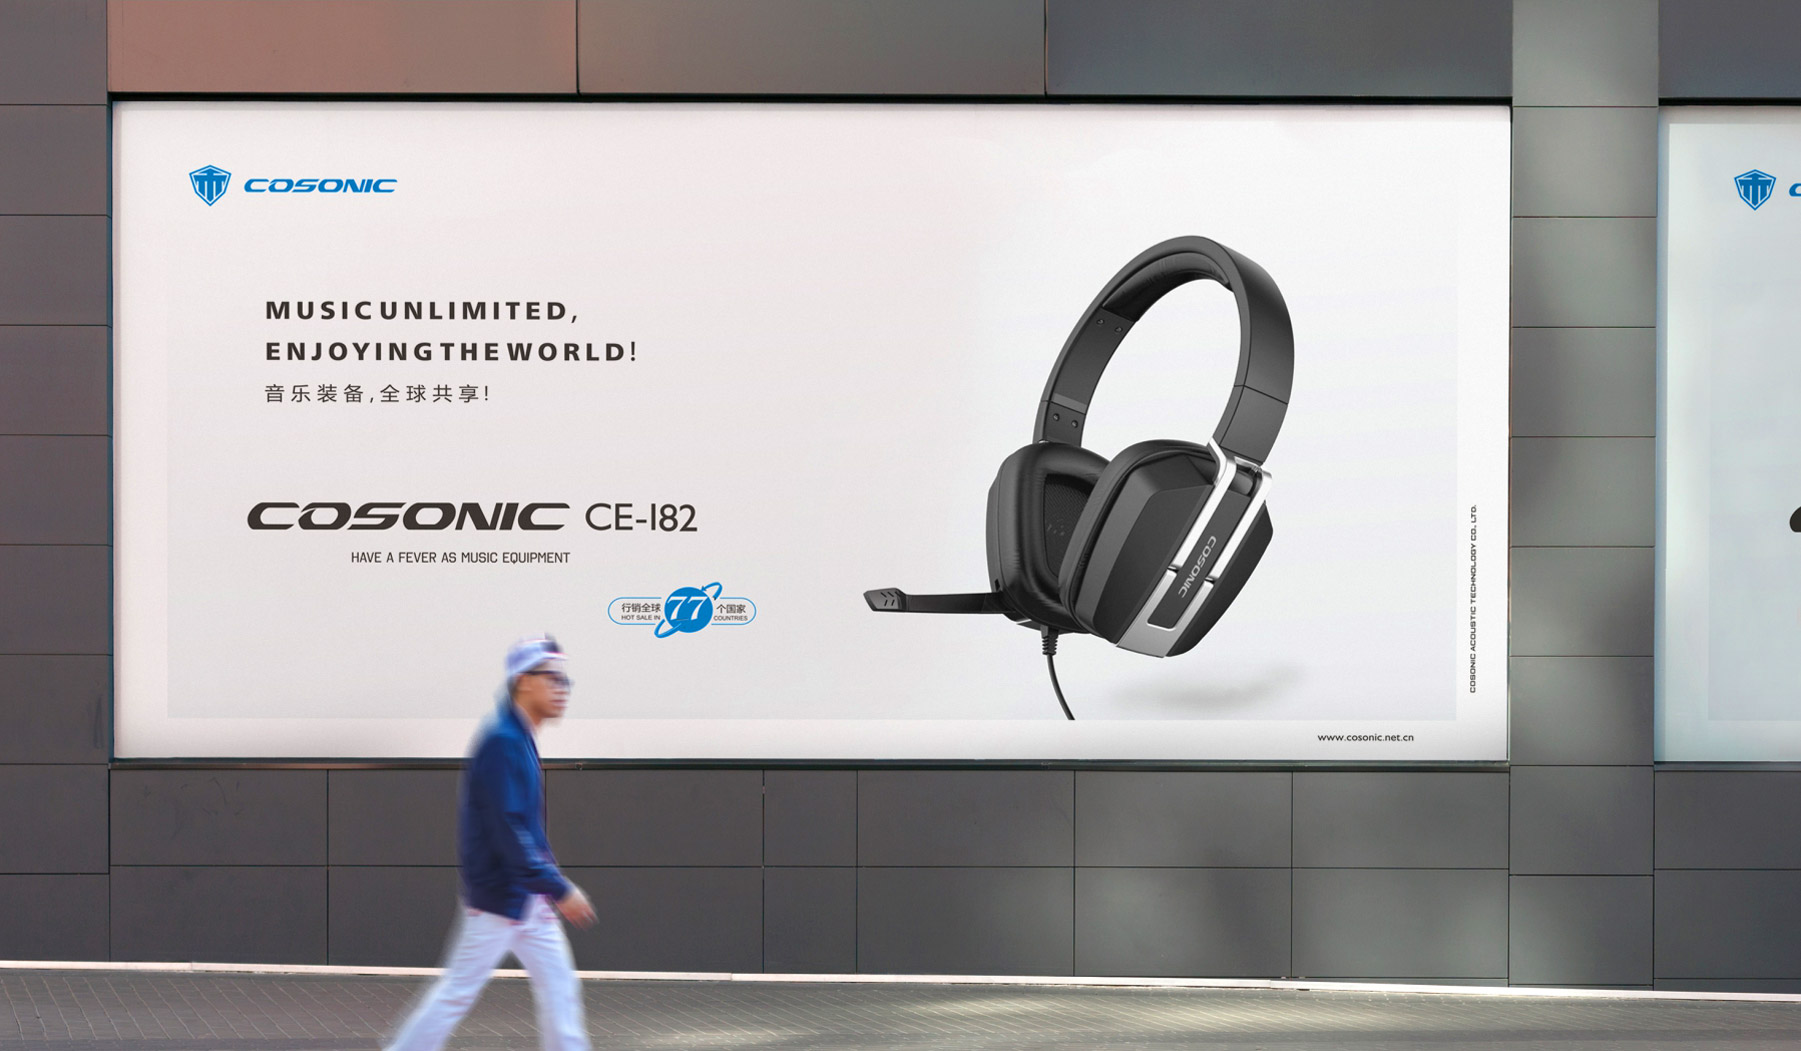 耳机品牌户外产品宣传海报效果图